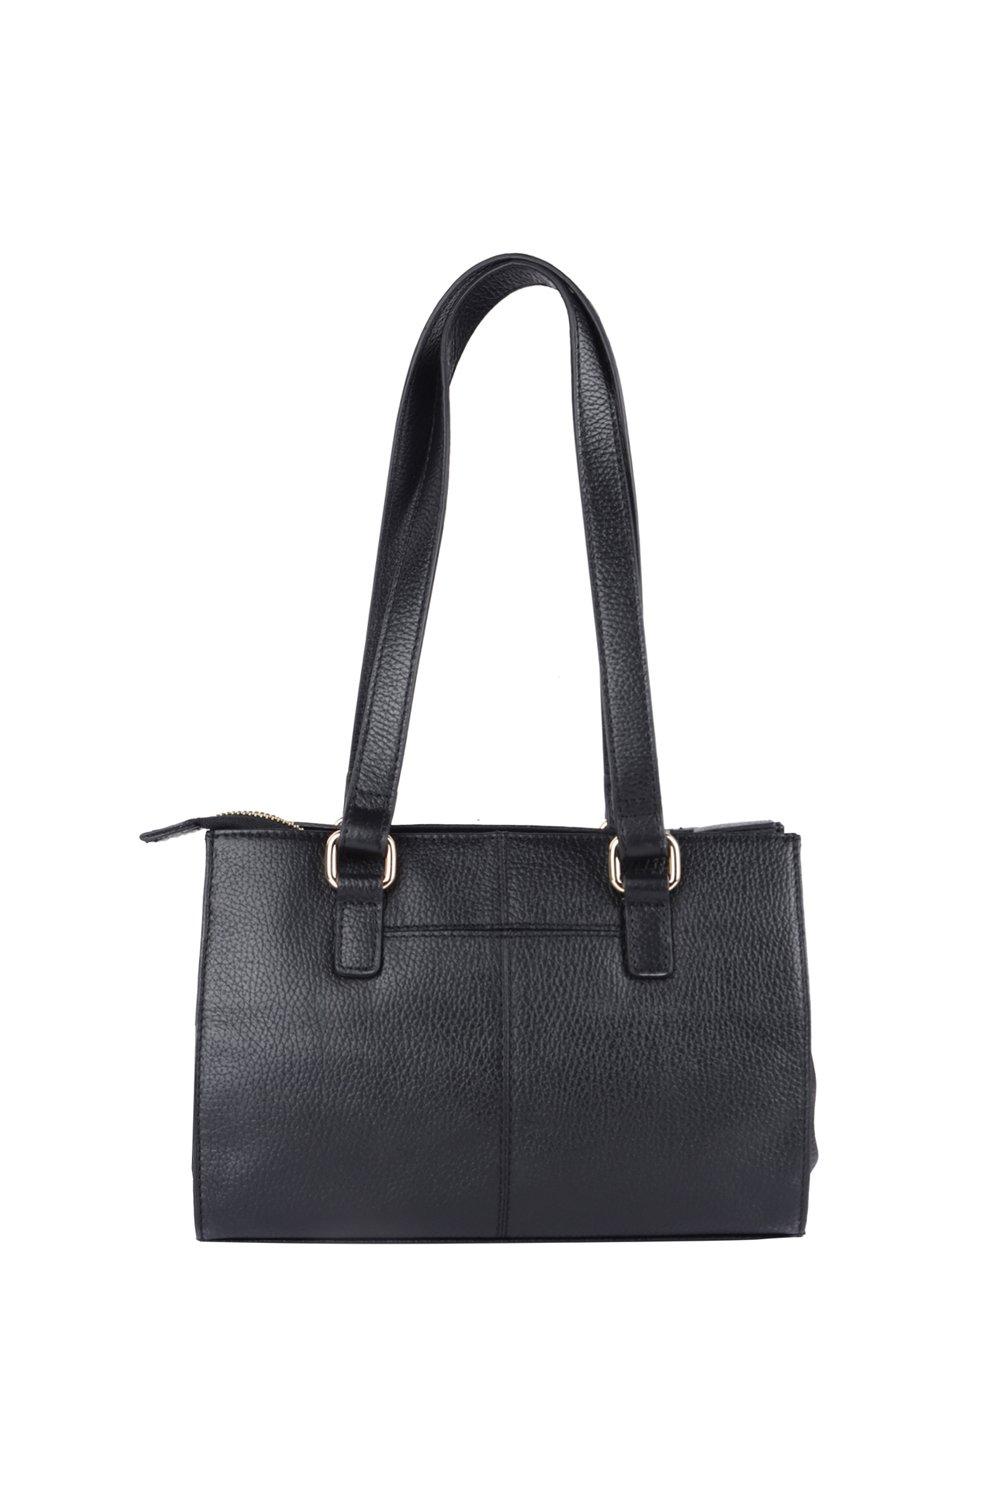 Calvin Klein cross body strap small handbag | Small handbags, Calvin klein  bag, Calvin klein handbags